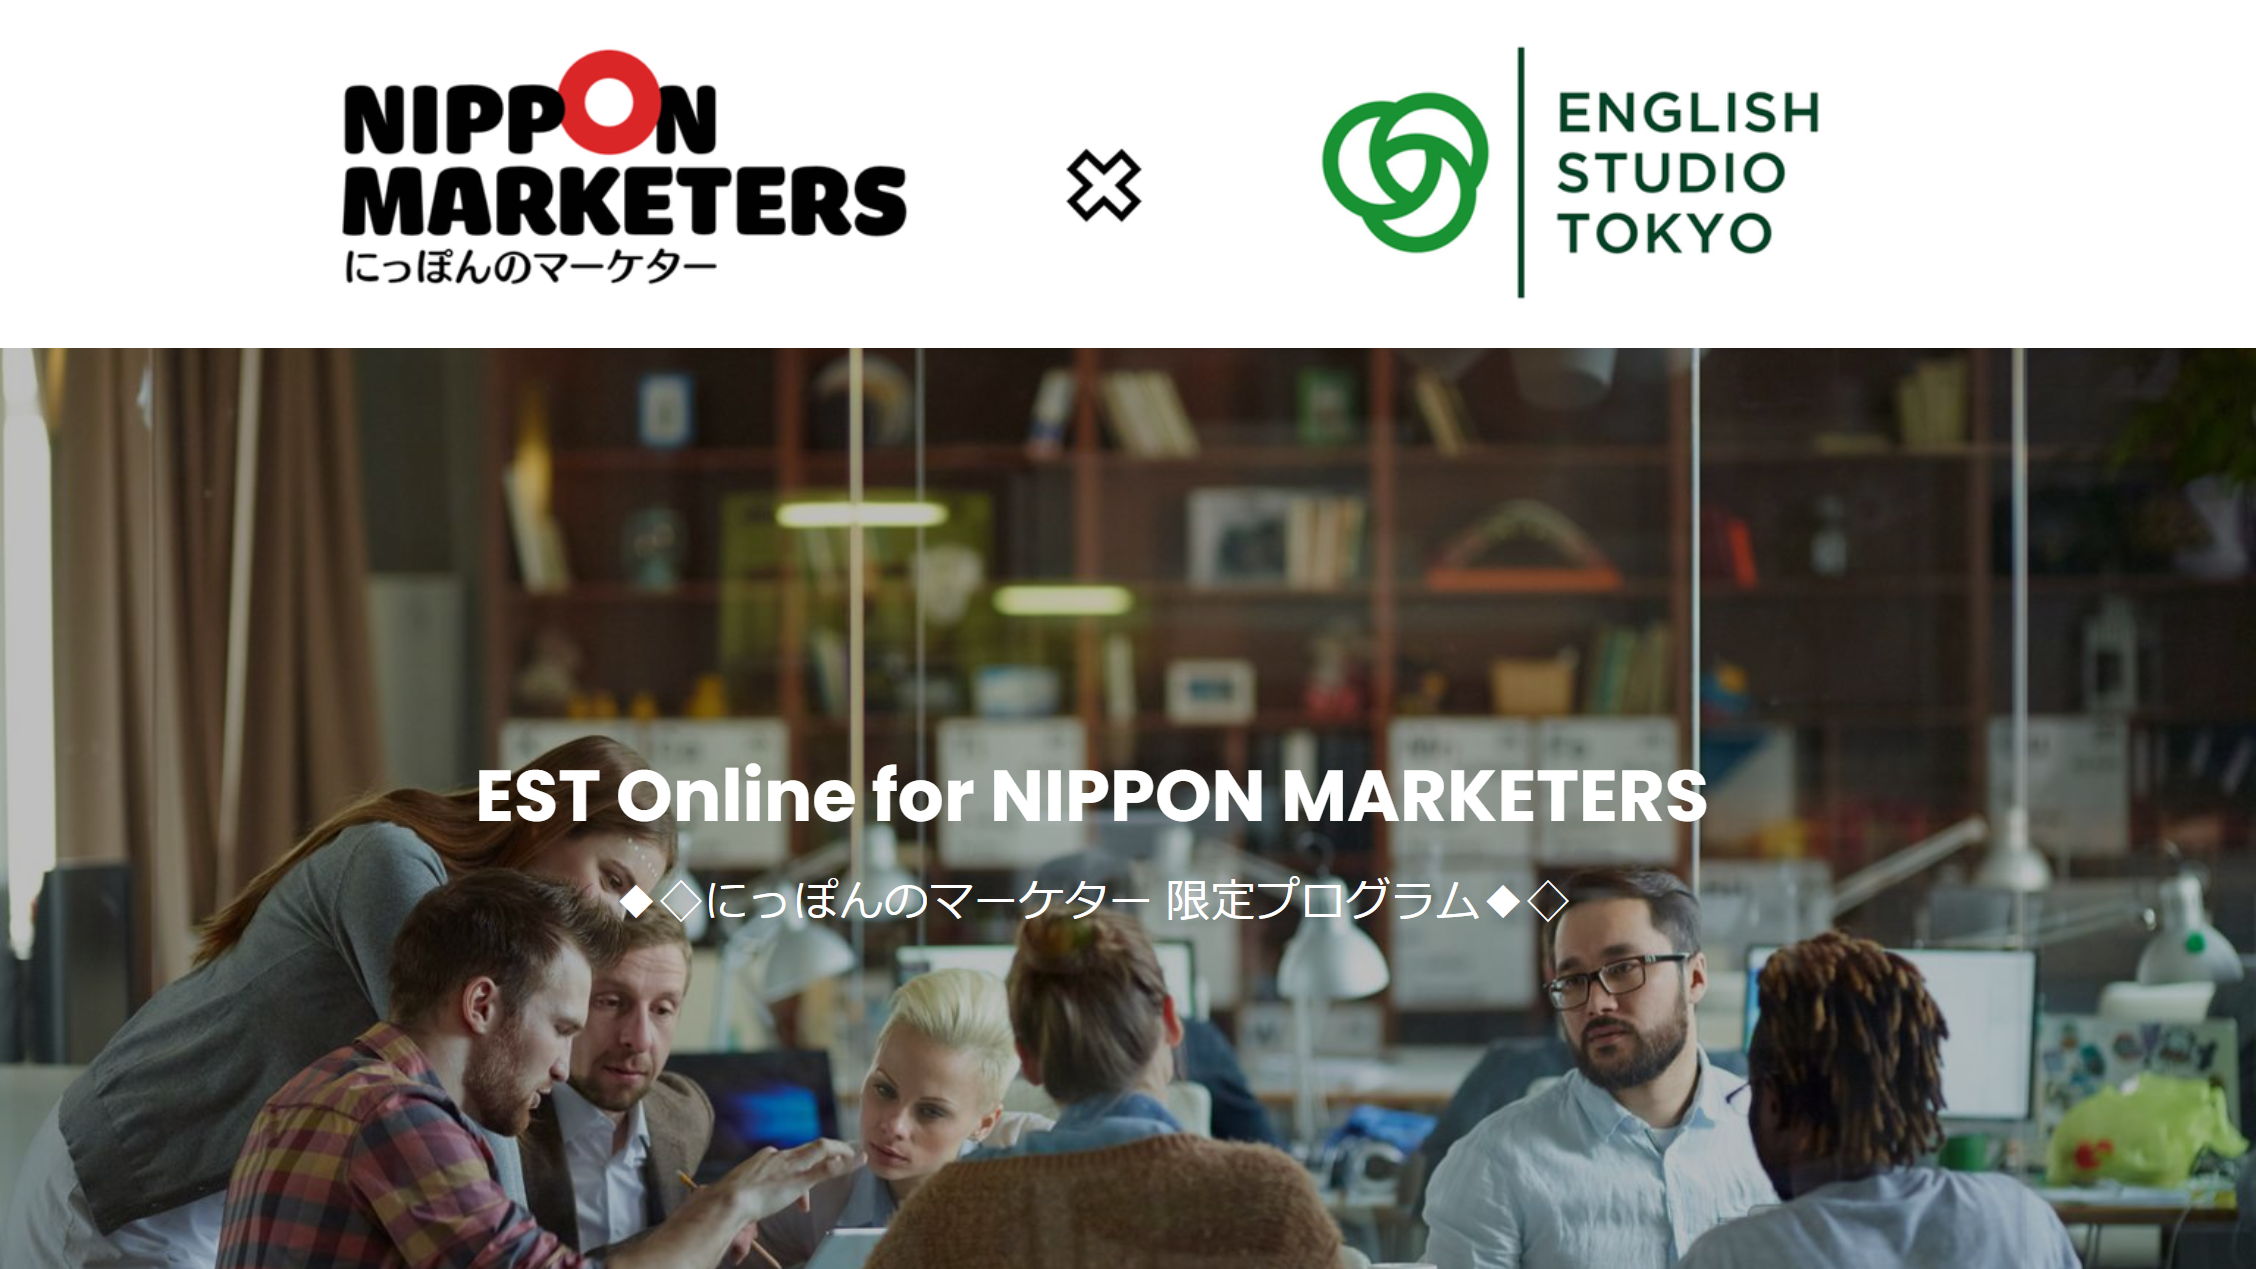 無料モニター募集 ビジネス英語オンラインセミナー 英会話は英語教師から ビジネス英語はビジネスのプロから 開催期間 4月13日 5月8日 Nippon Marketers